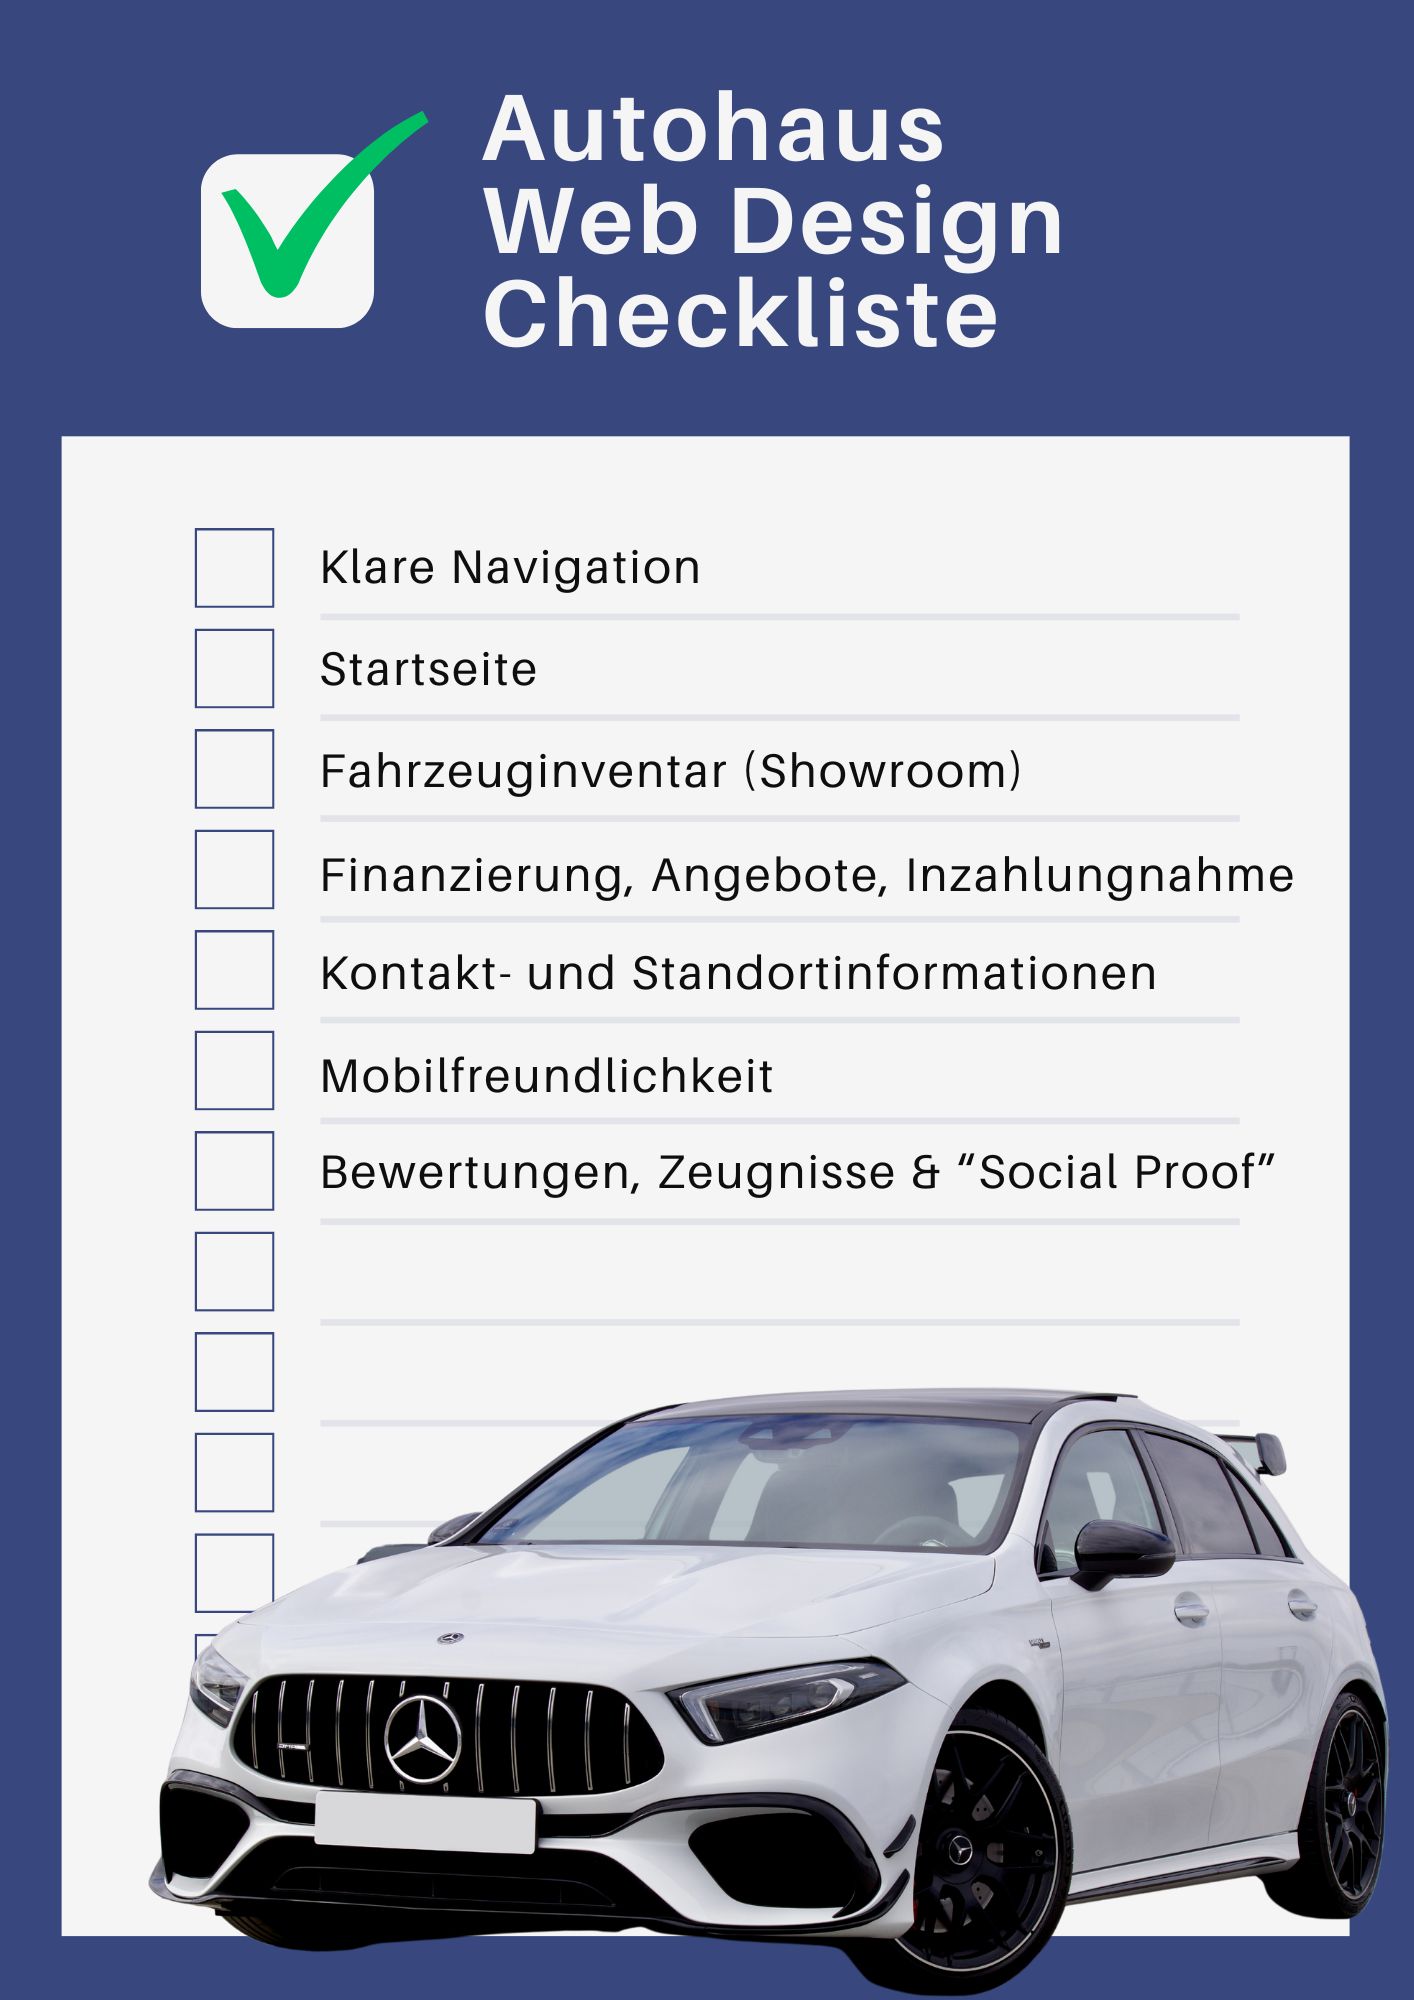 Web Design Checkliste - Autohaus